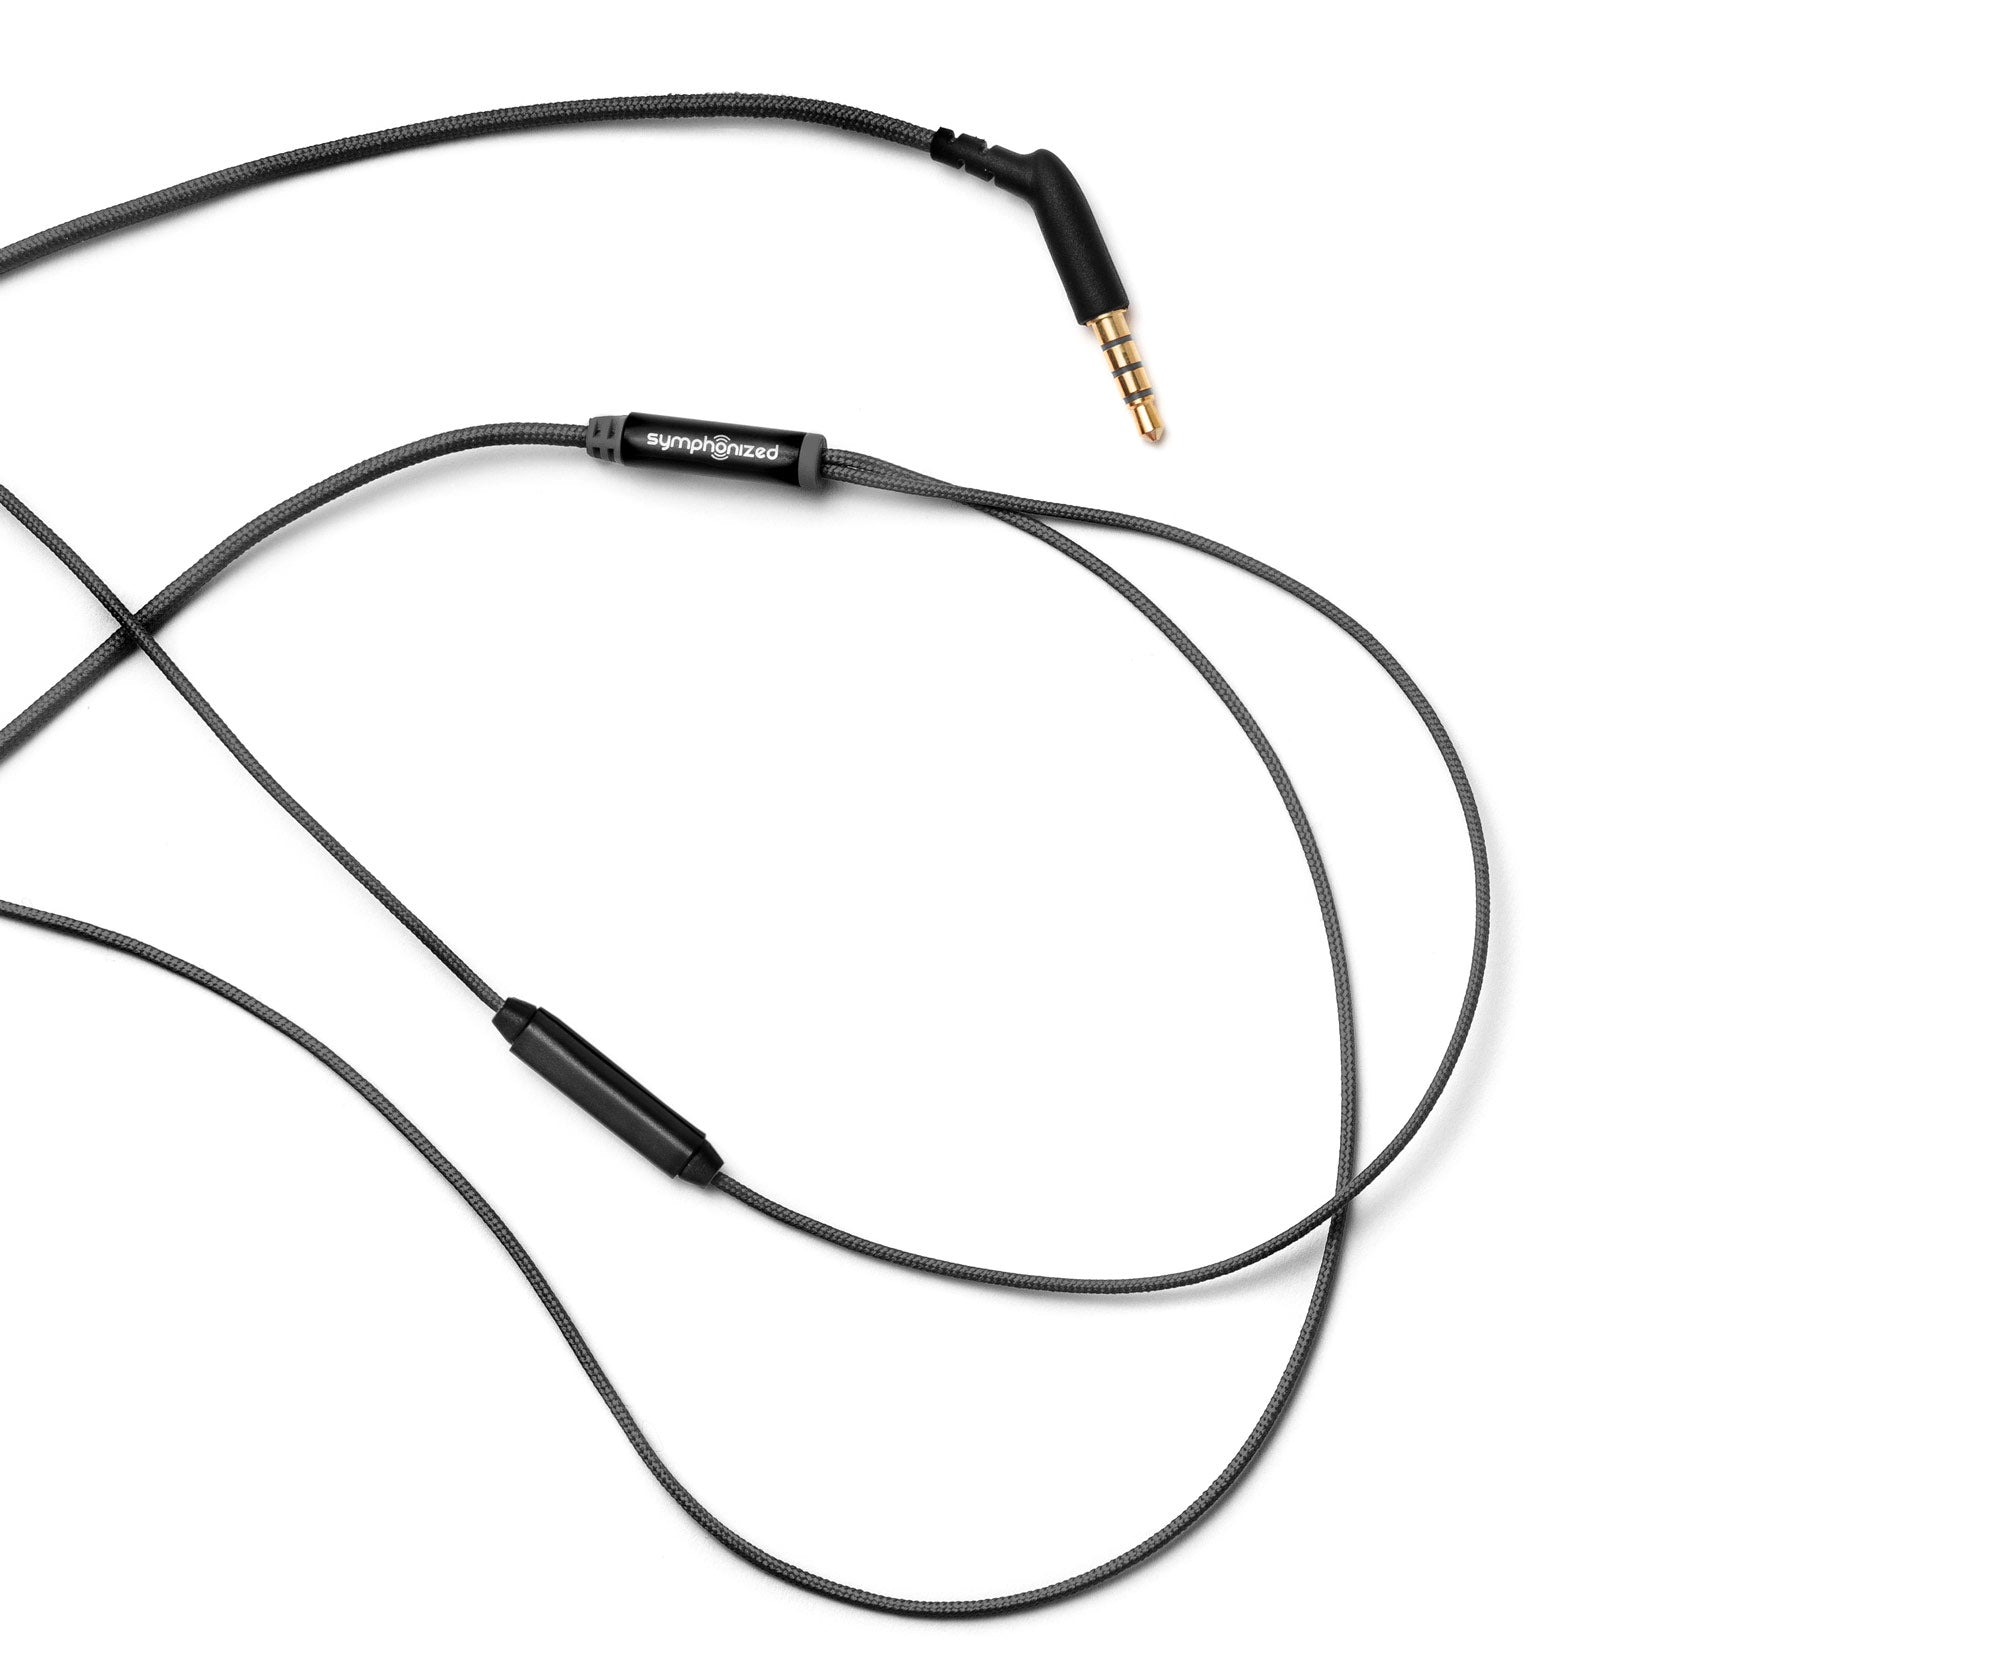 MTRX In-Ear Wood Headphones - Black